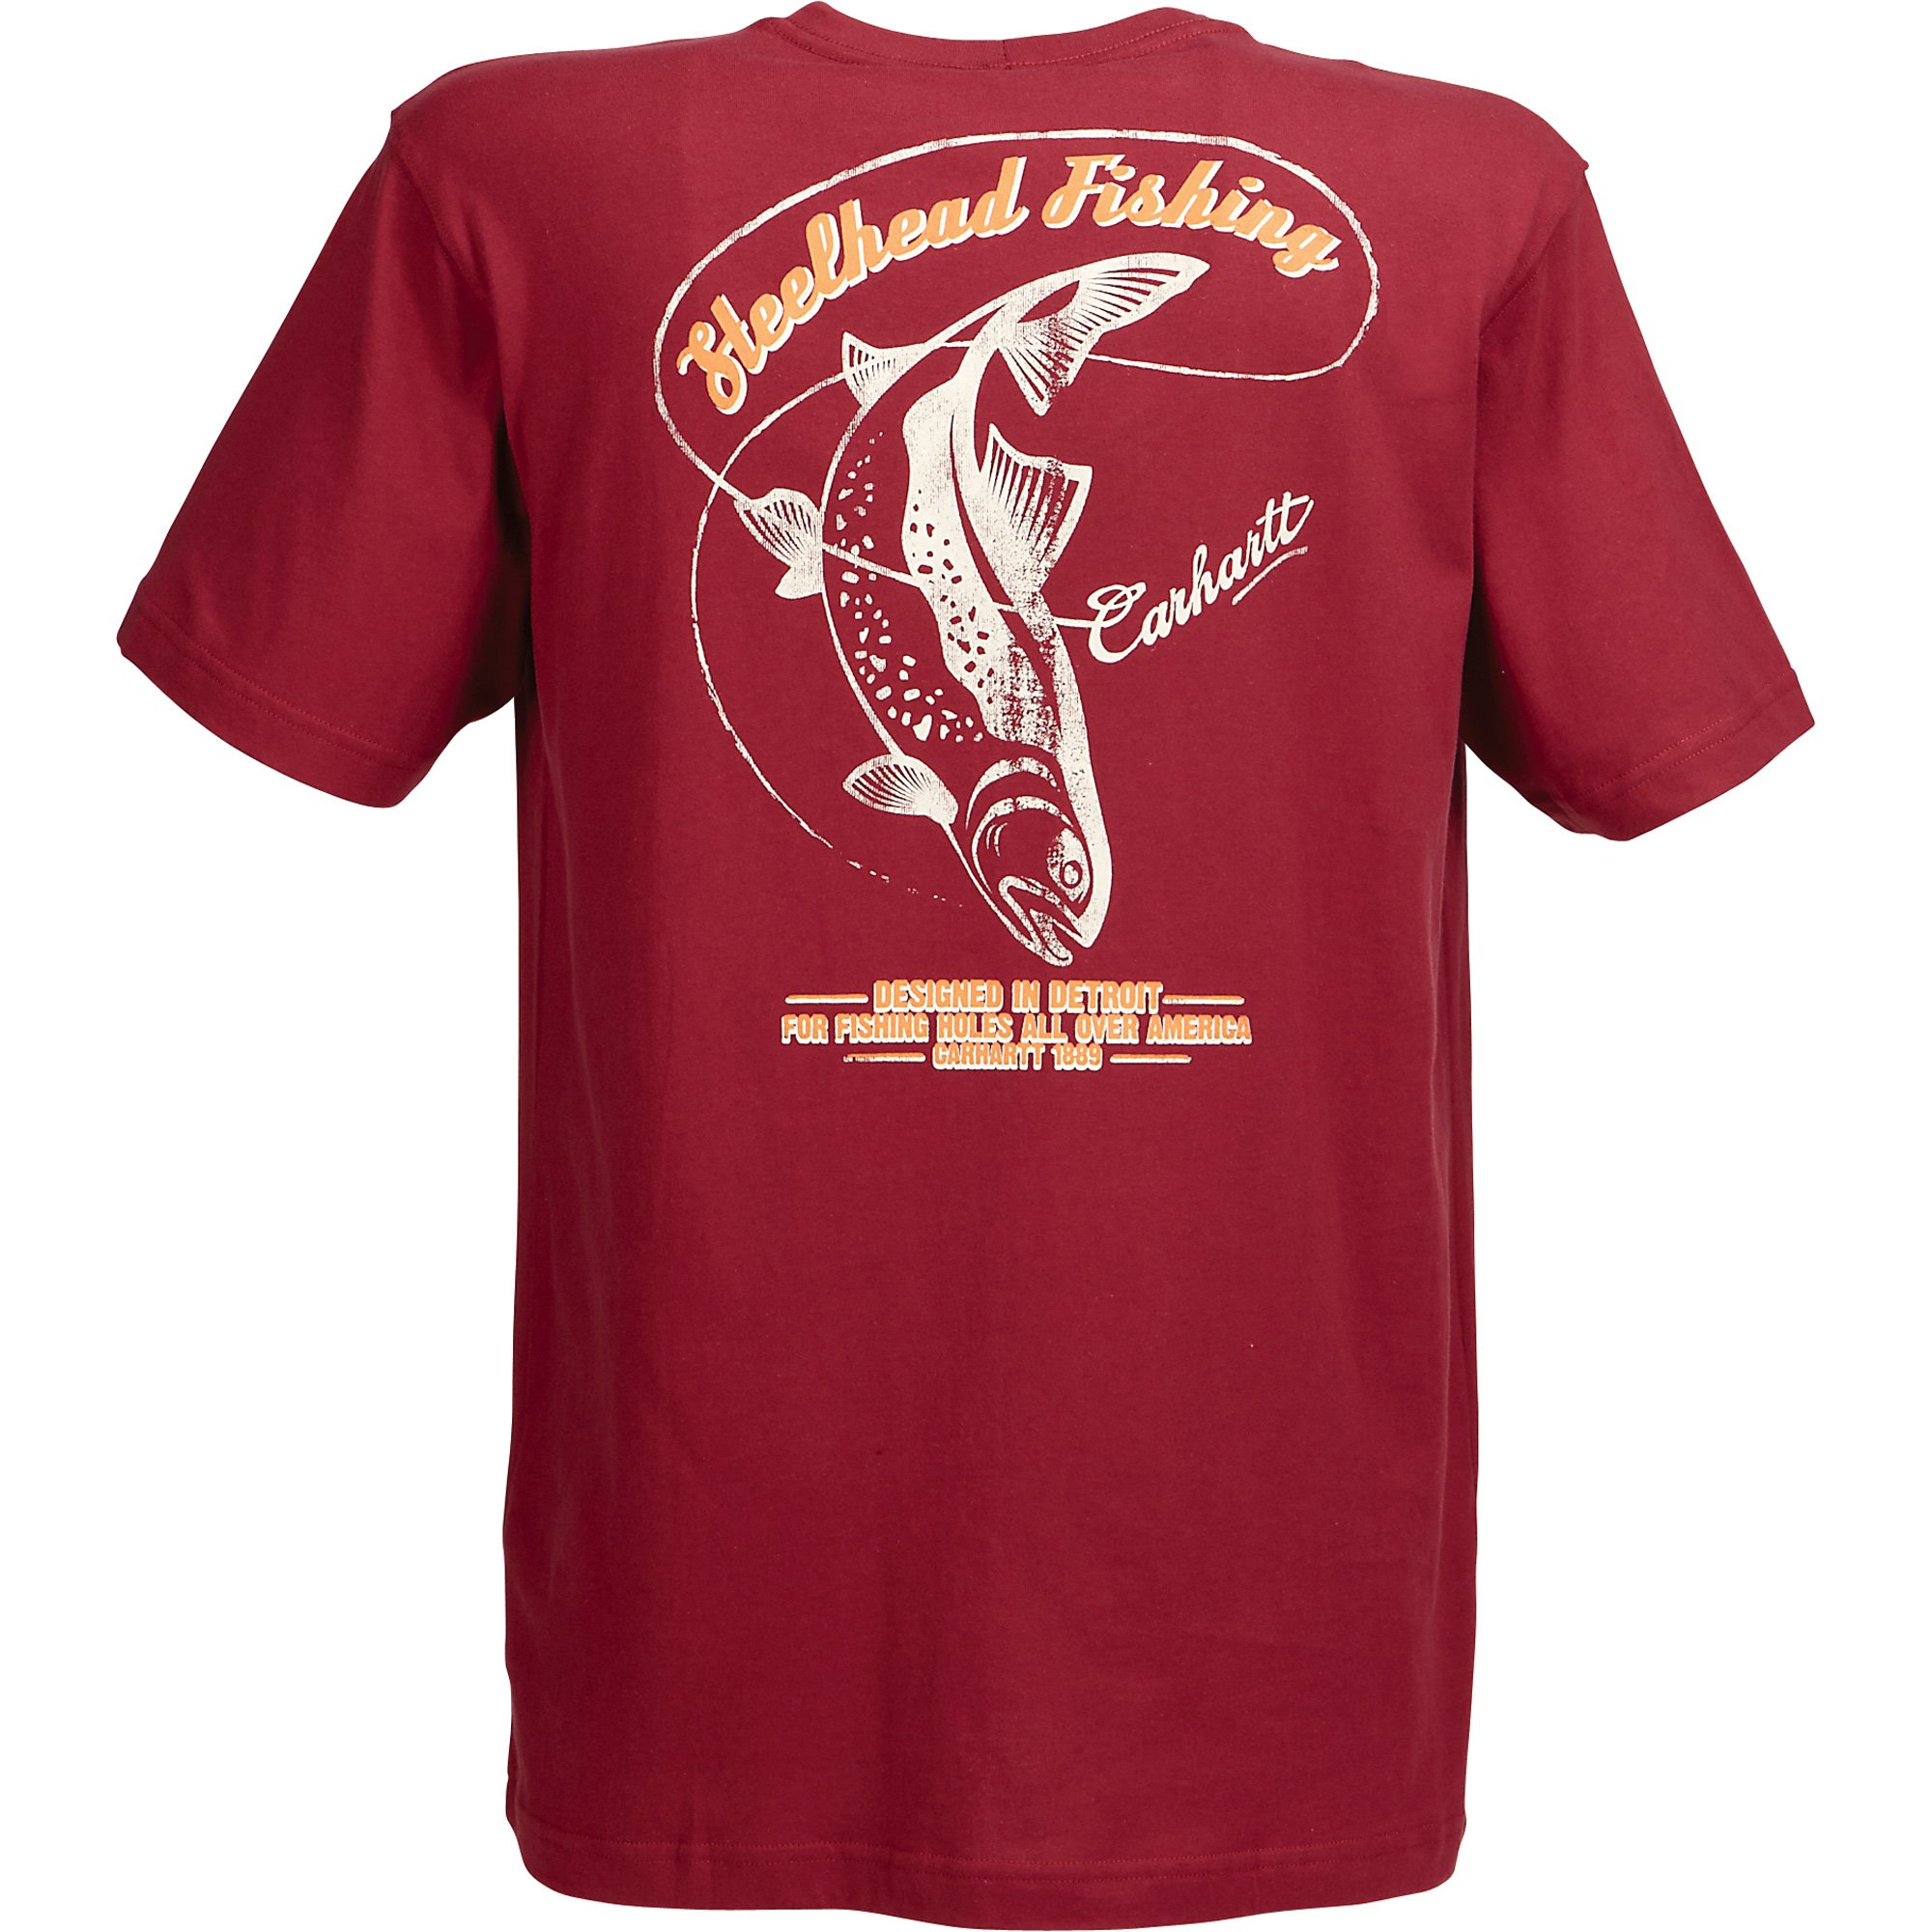 Carhartt Steelhead Fishing Short Sleeve Pocket T-Shirt — Dark Red, XL,  Model# 100395